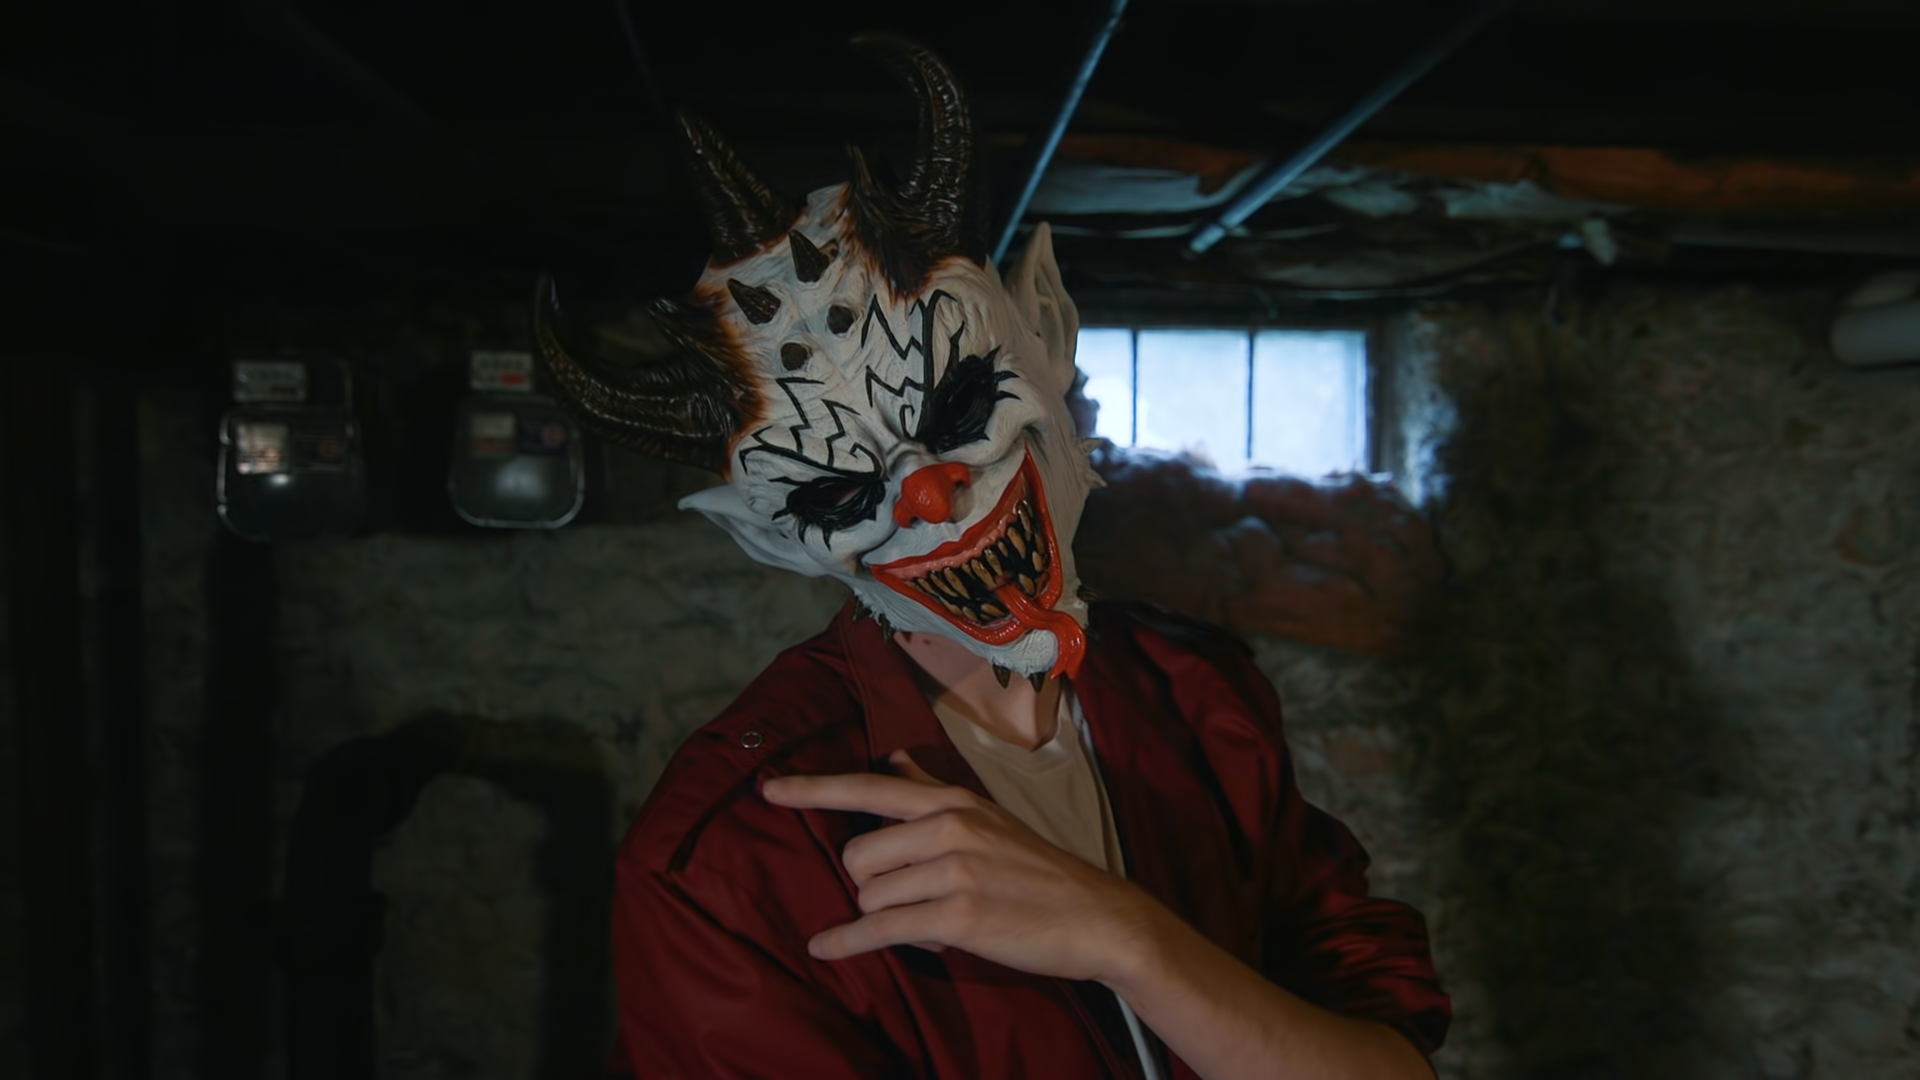 Demonic Devil Clown | Premium Halloween Movie FX Mask